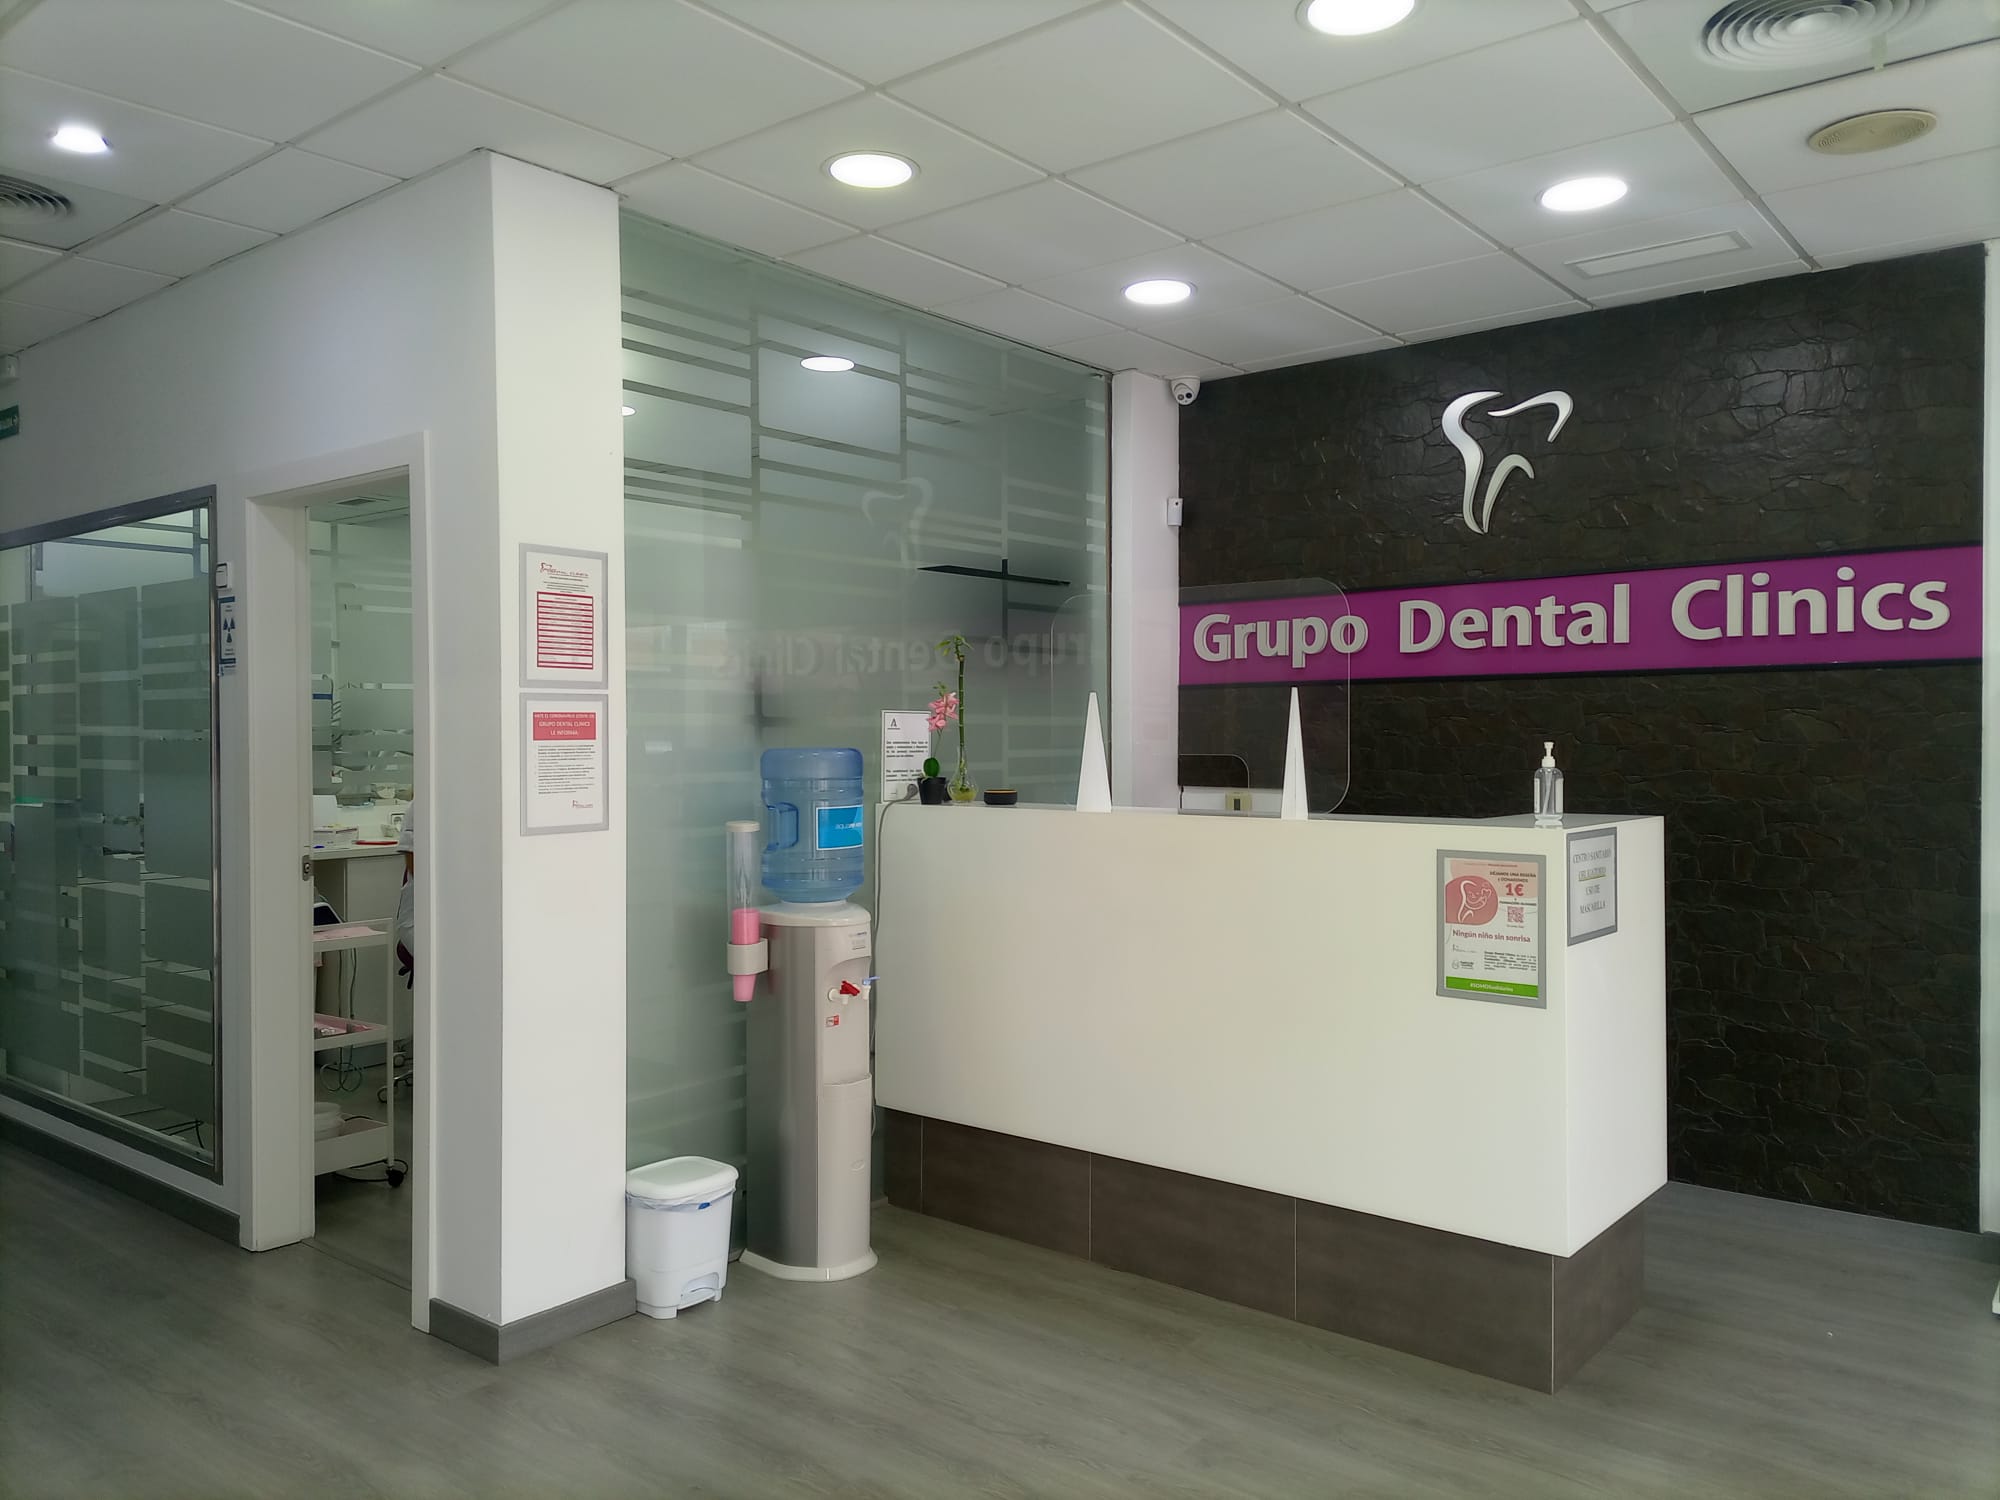 Grillz dentales y sus riesgos. • Clínica Finedent Granada